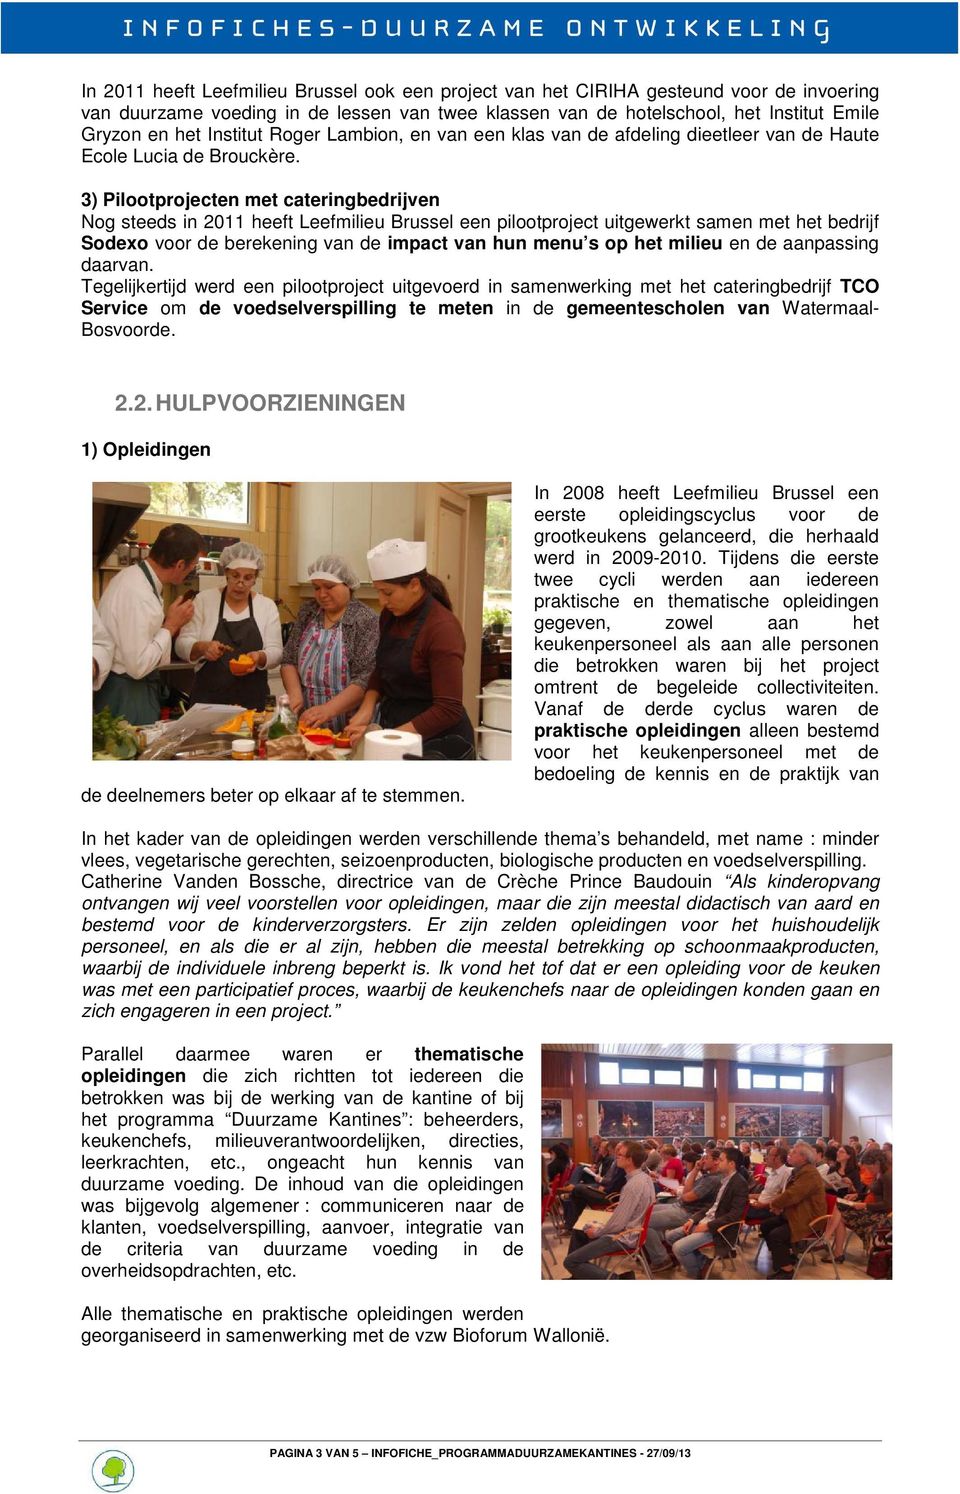 3) Pilootprojecten met cateringbedrijven Nog steeds in 2011 heeft Leefmilieu Brussel een pilootproject uitgewerkt samen met het bedrijf Sodexo voor de berekening van de impact van hun menu s op het